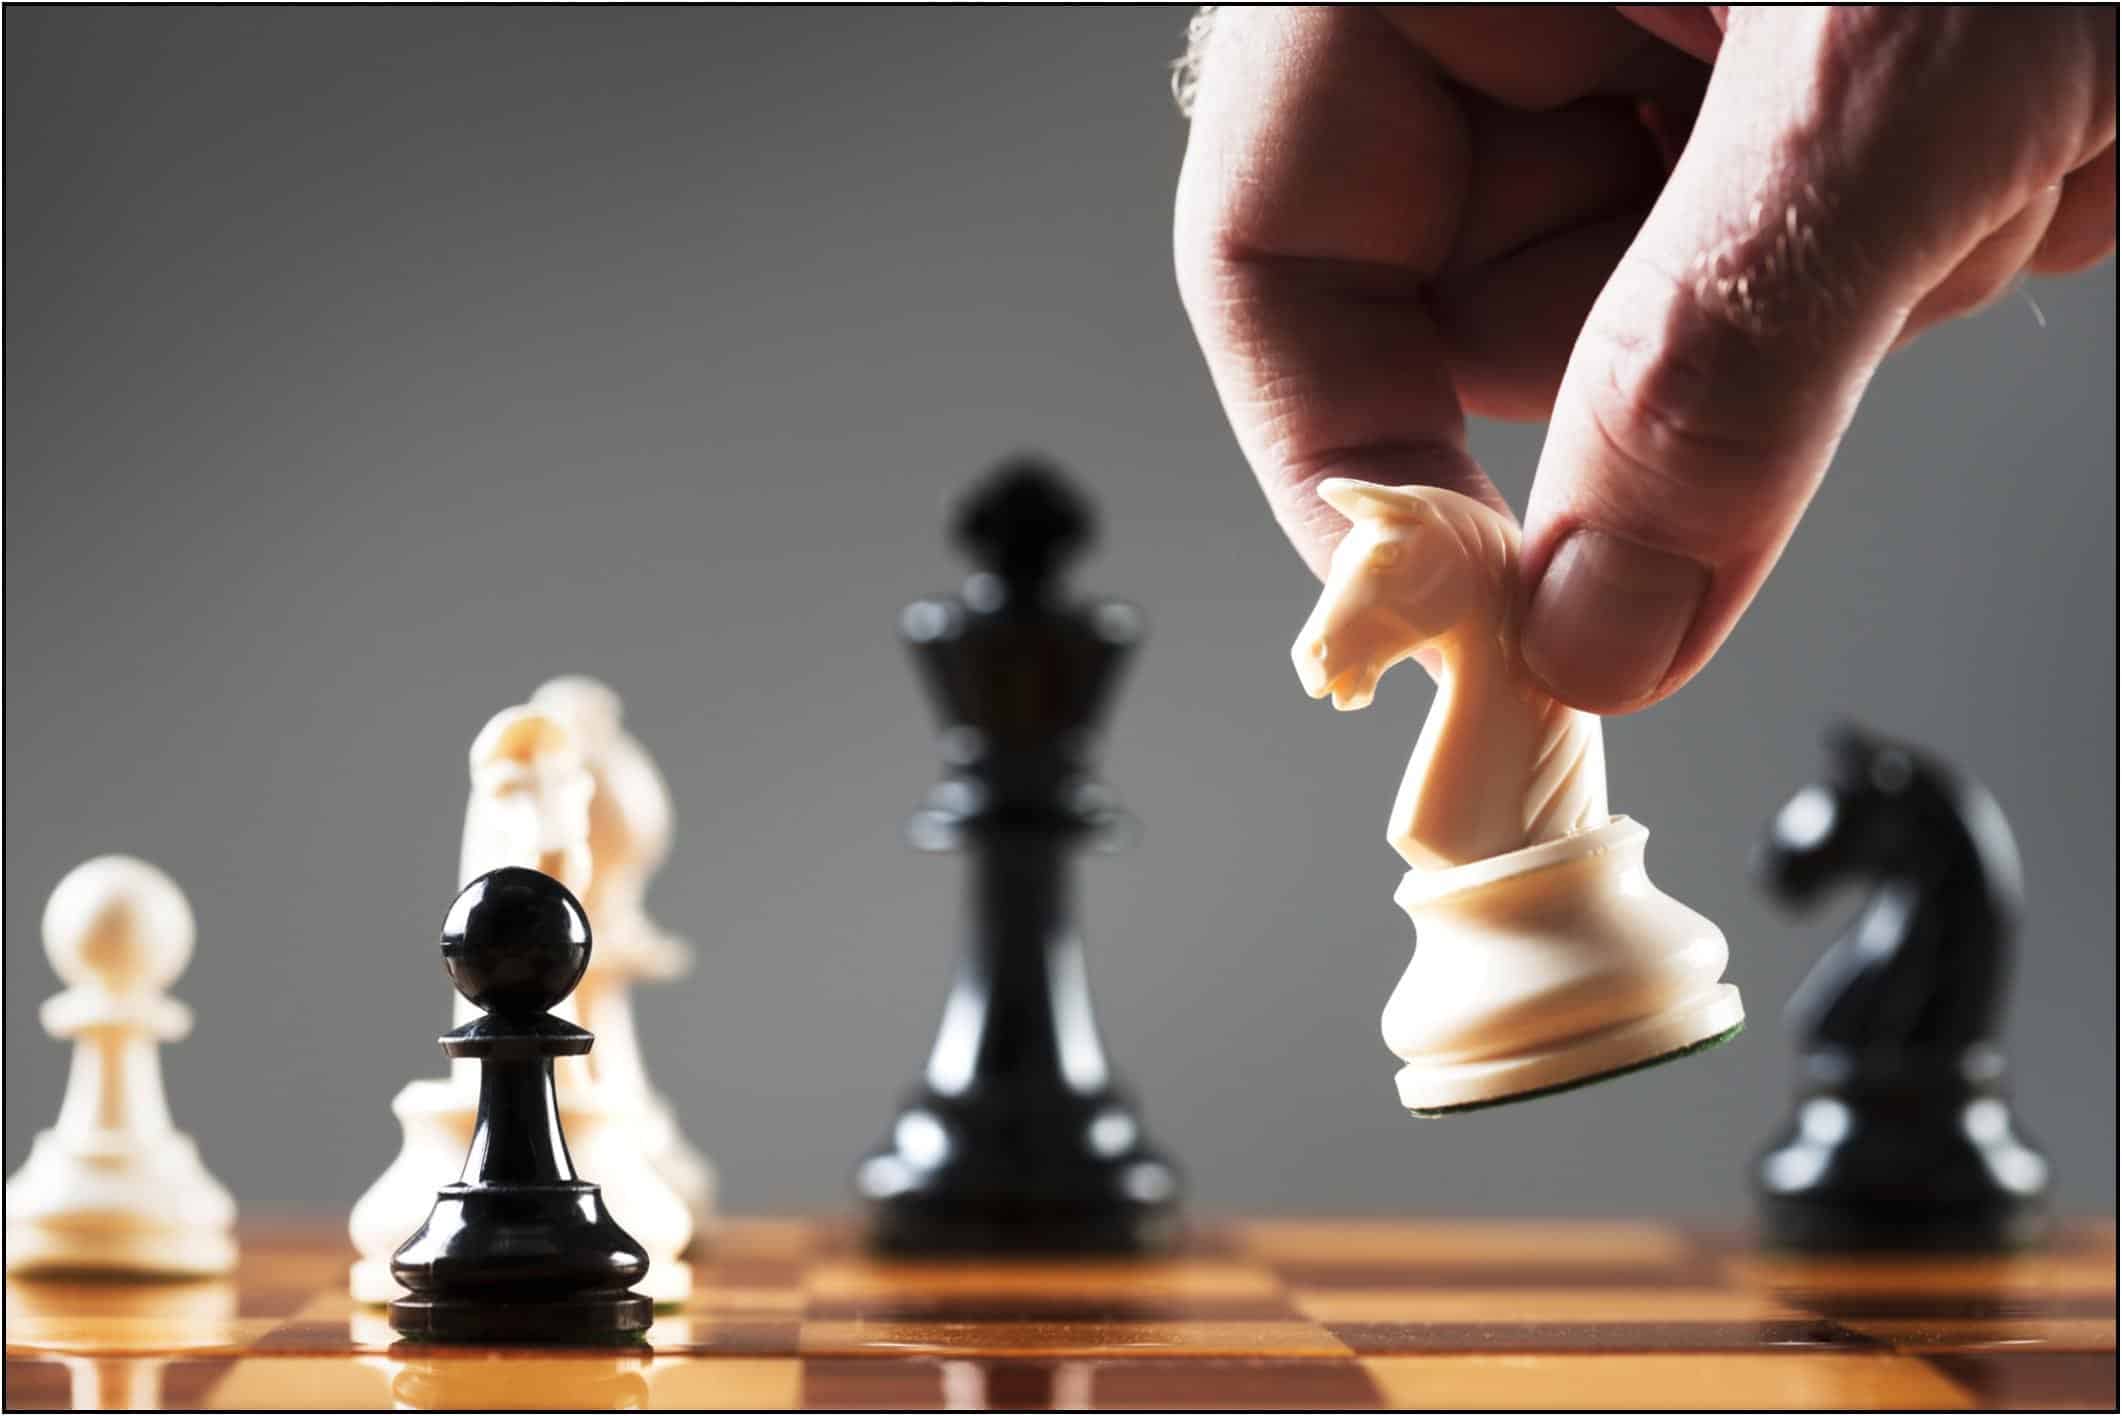 šachmatų strategijos prekybos figūros kaip išsirinkti geriausias pasirinkimo sandorių akcijas